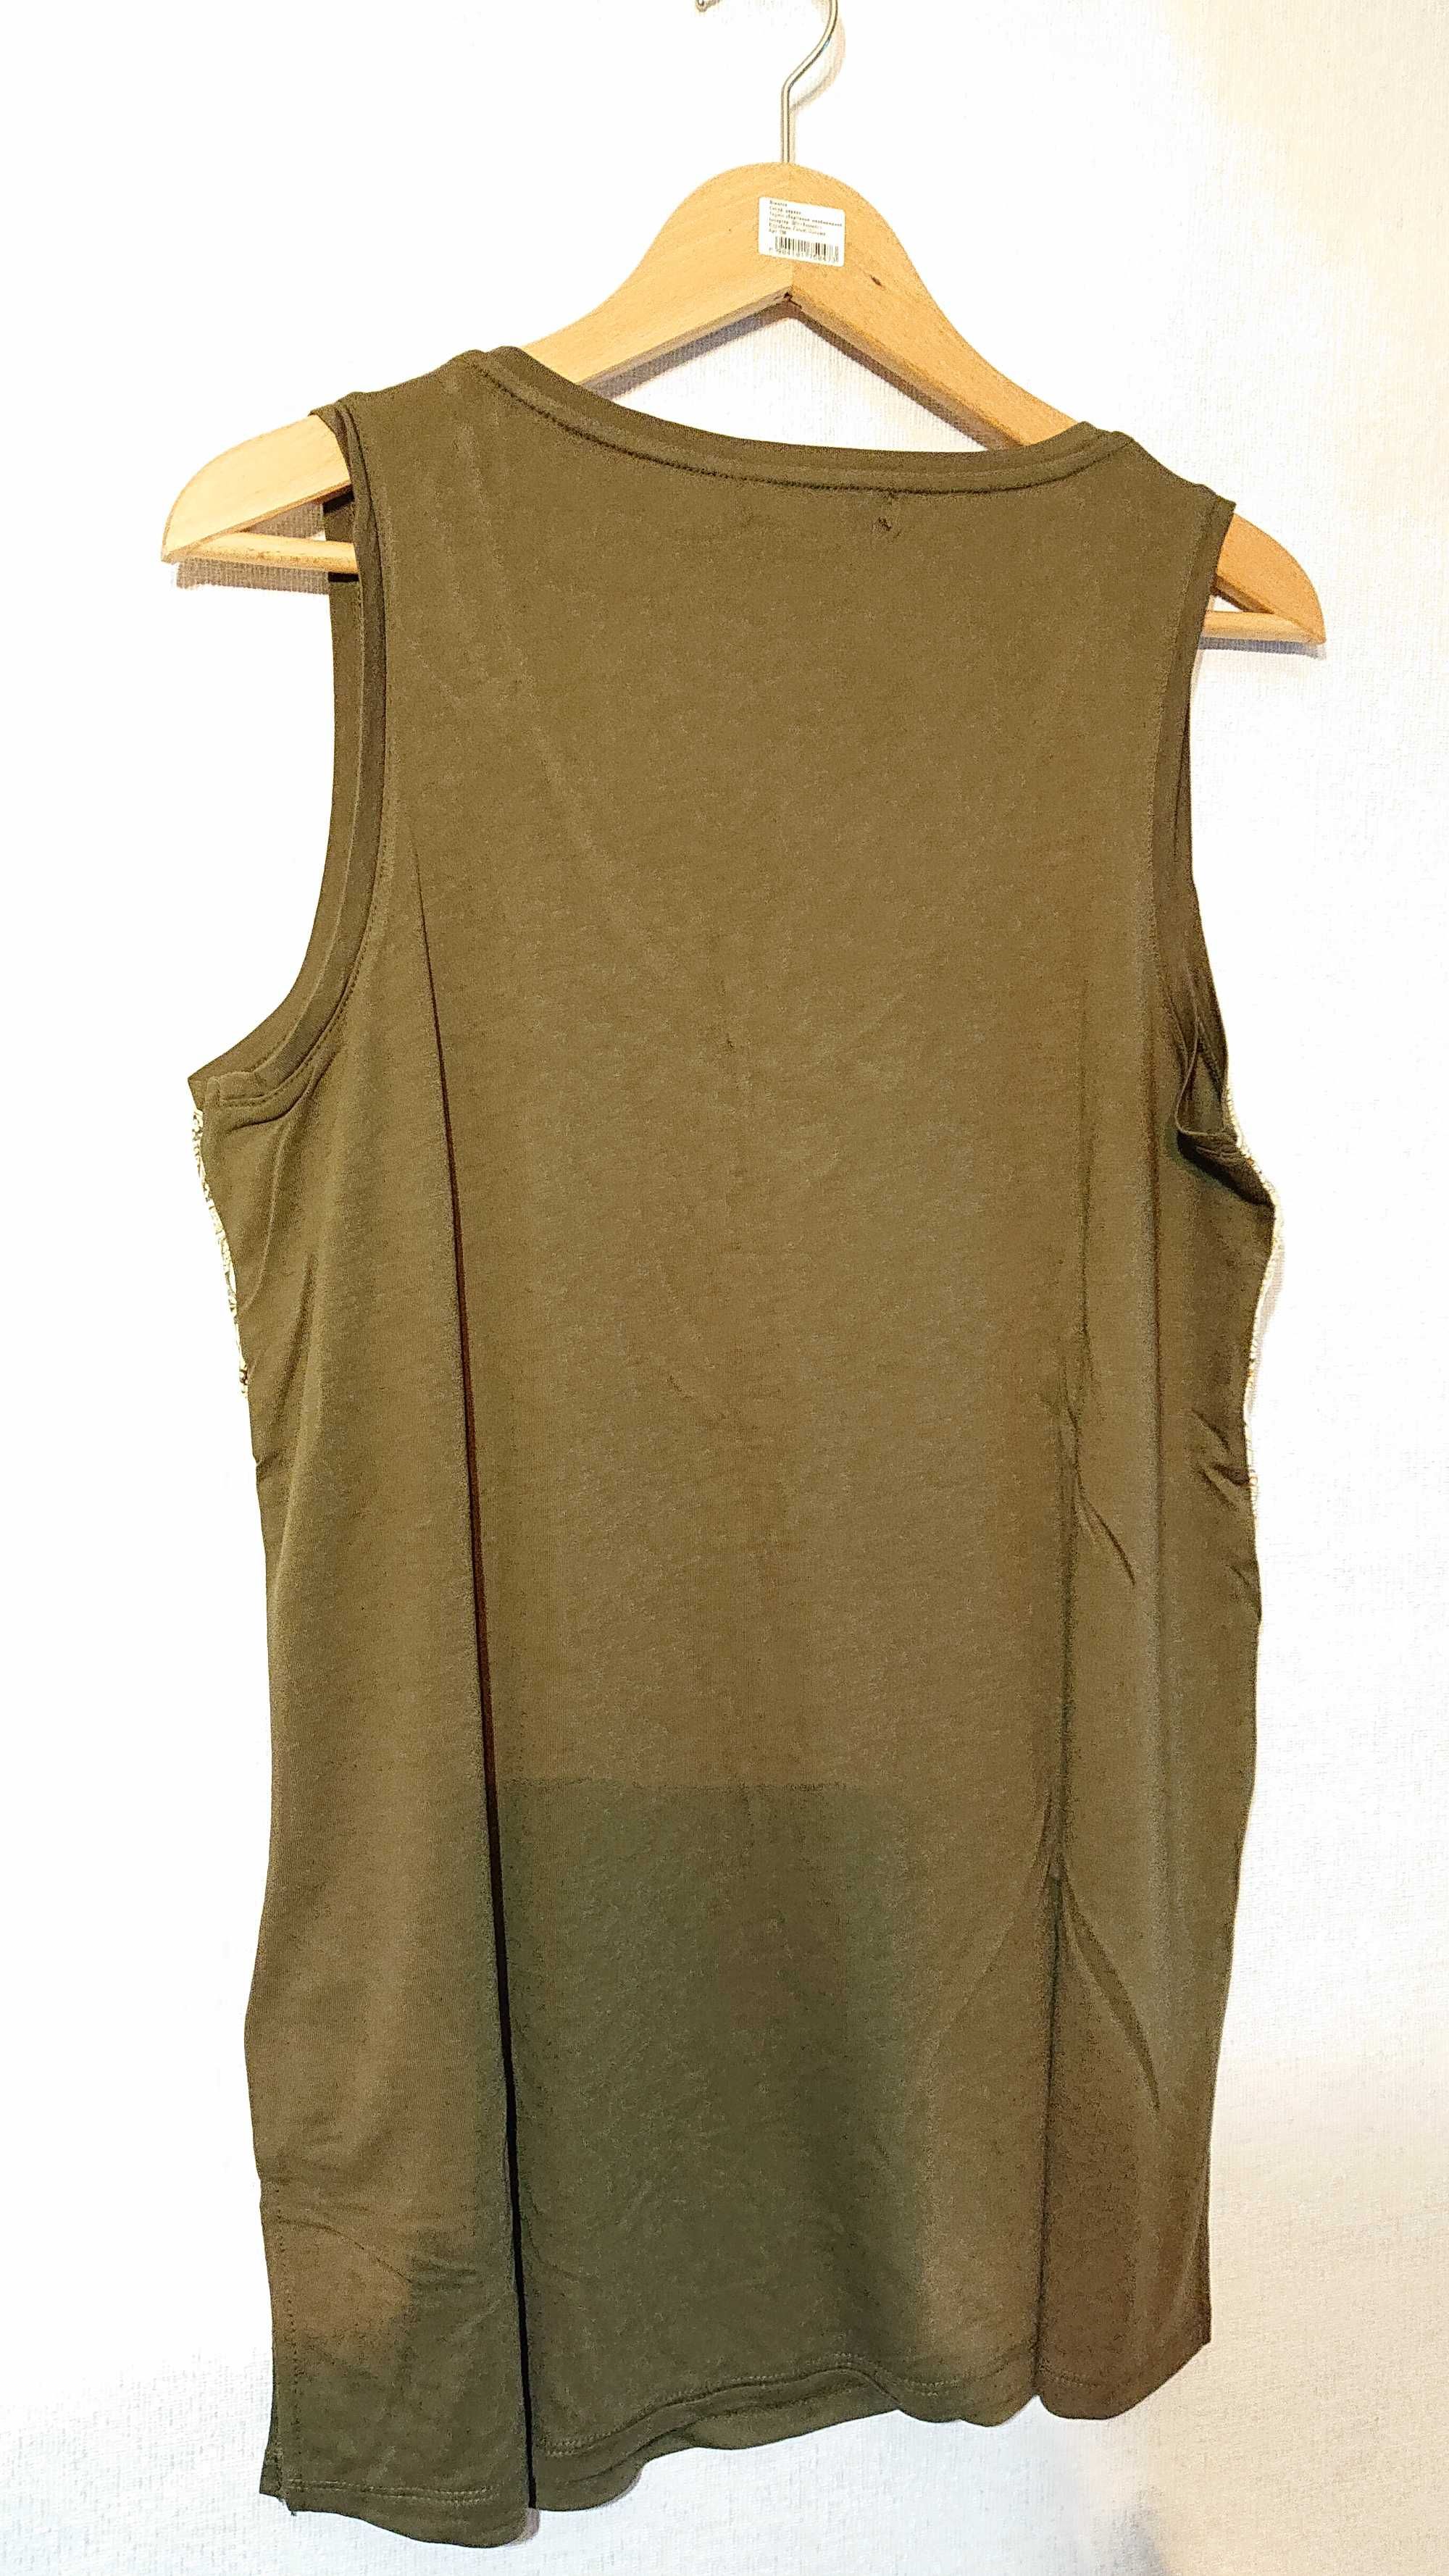 Женская блуза Cortefiel L XL 48 50 блузка топ футболка майка вискоза